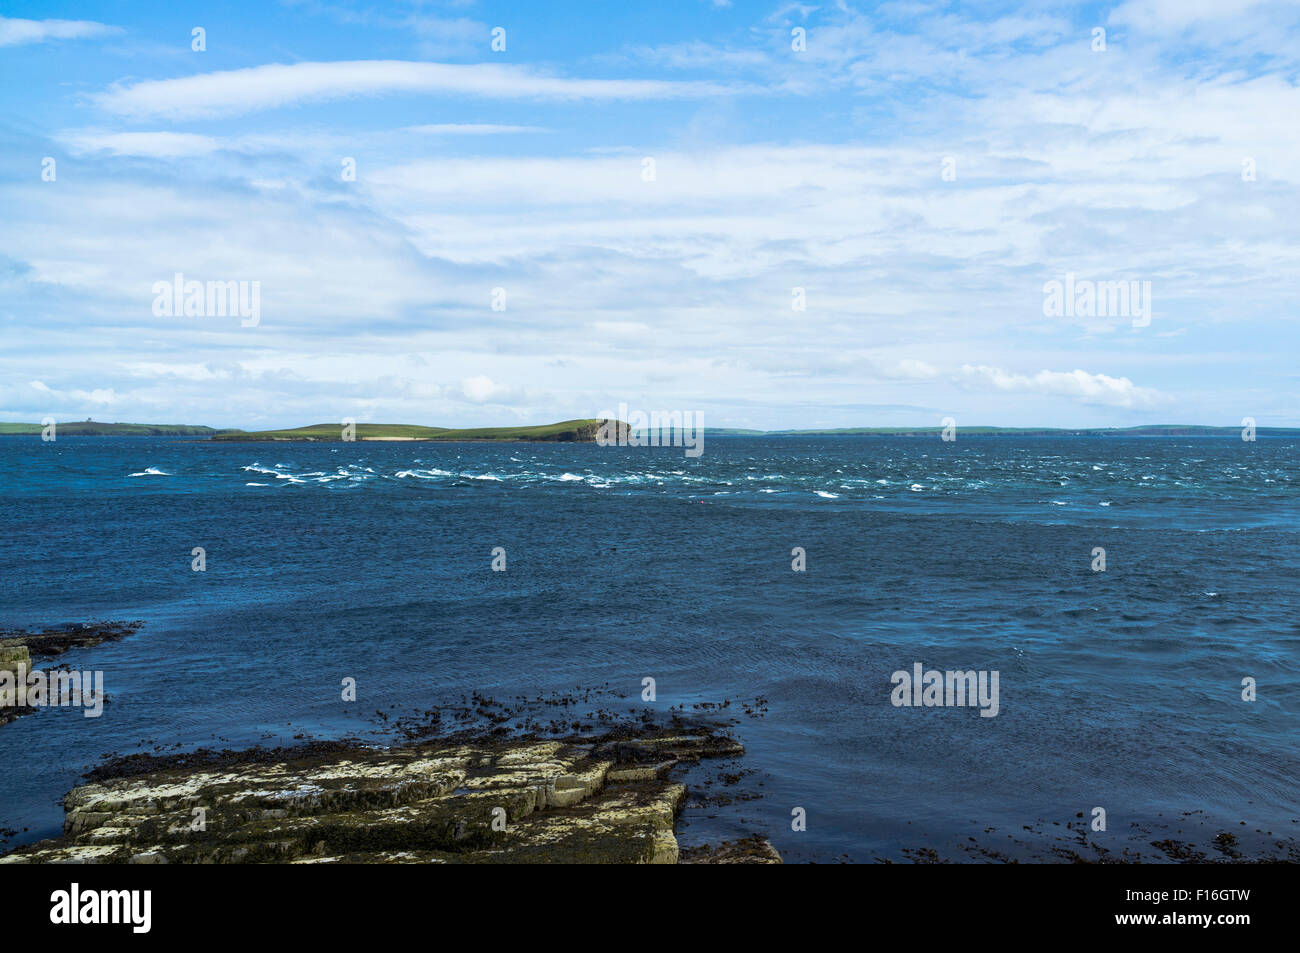 dh Hoy ORKNEY courant de marée Pentland Firth Hoxa Sound eaux de circulation Banque D'Images